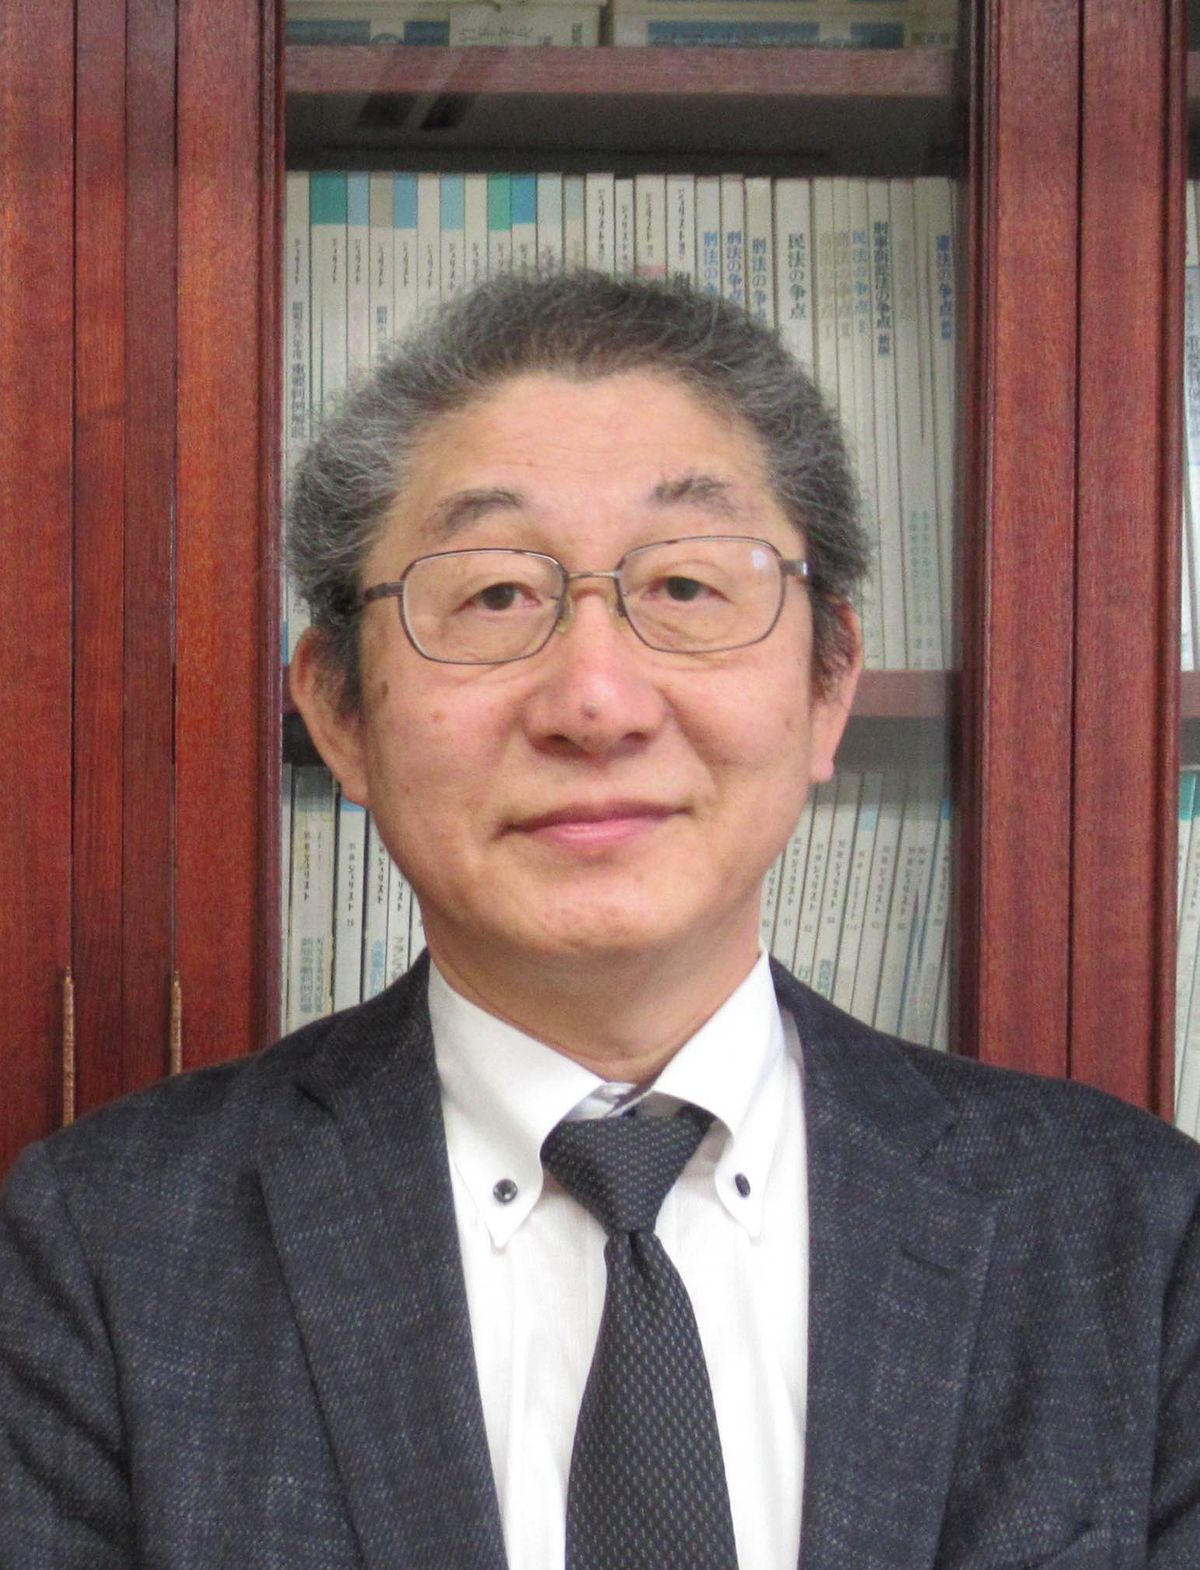 「自衛官のための人権弁護団」代表の佐藤博文弁護士